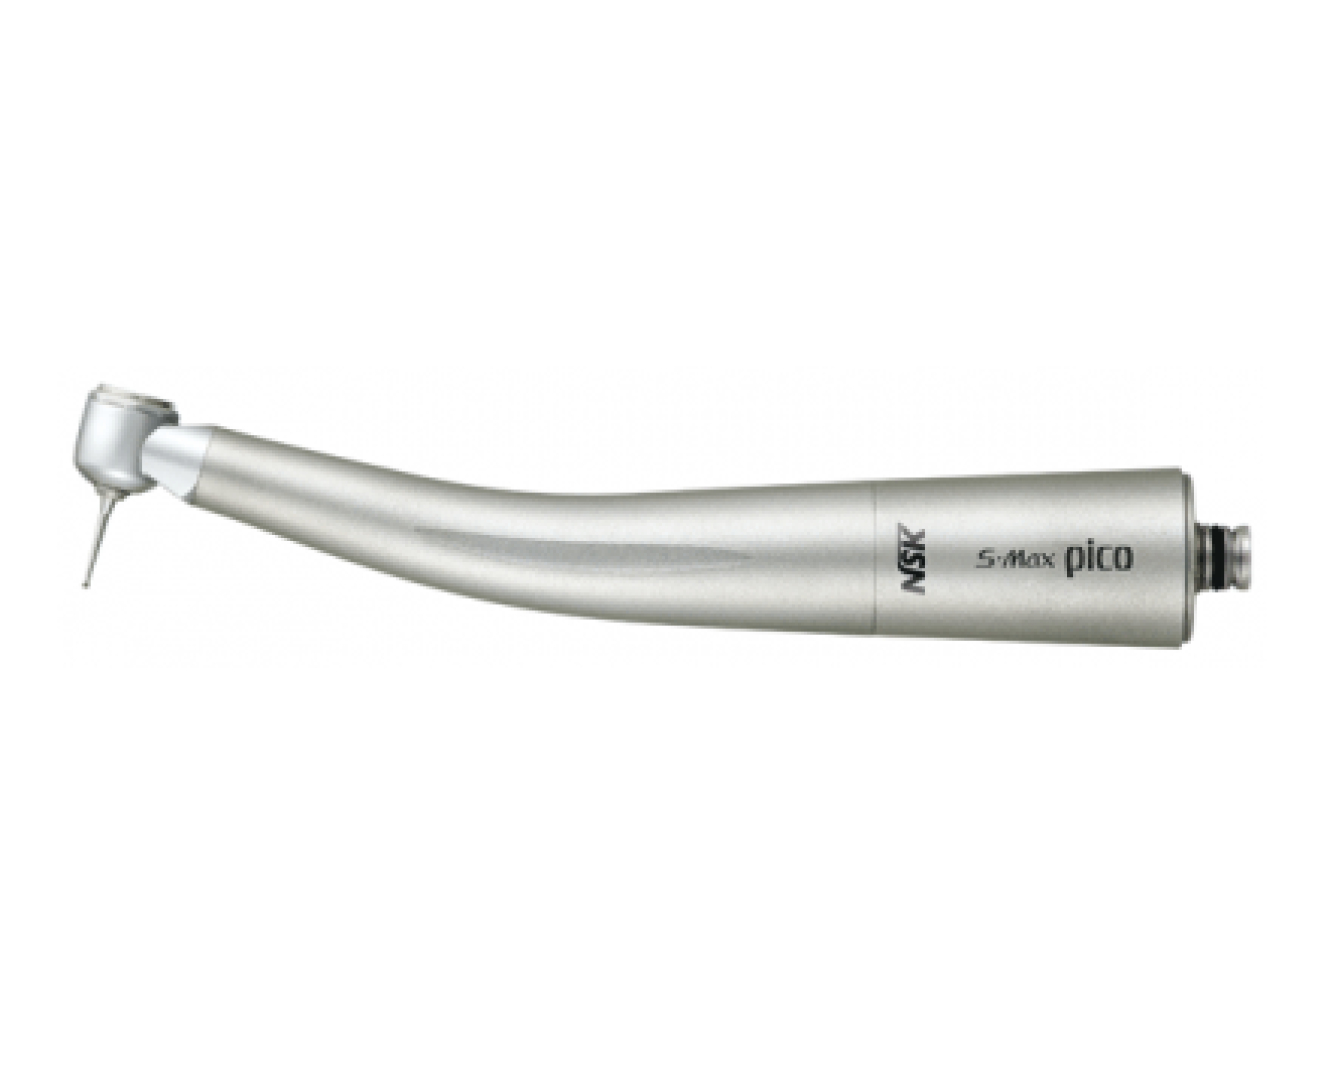 S-Max Pico Стоматологический турбинный наконечник, с самой маленькой головкой, NSK (Япония)